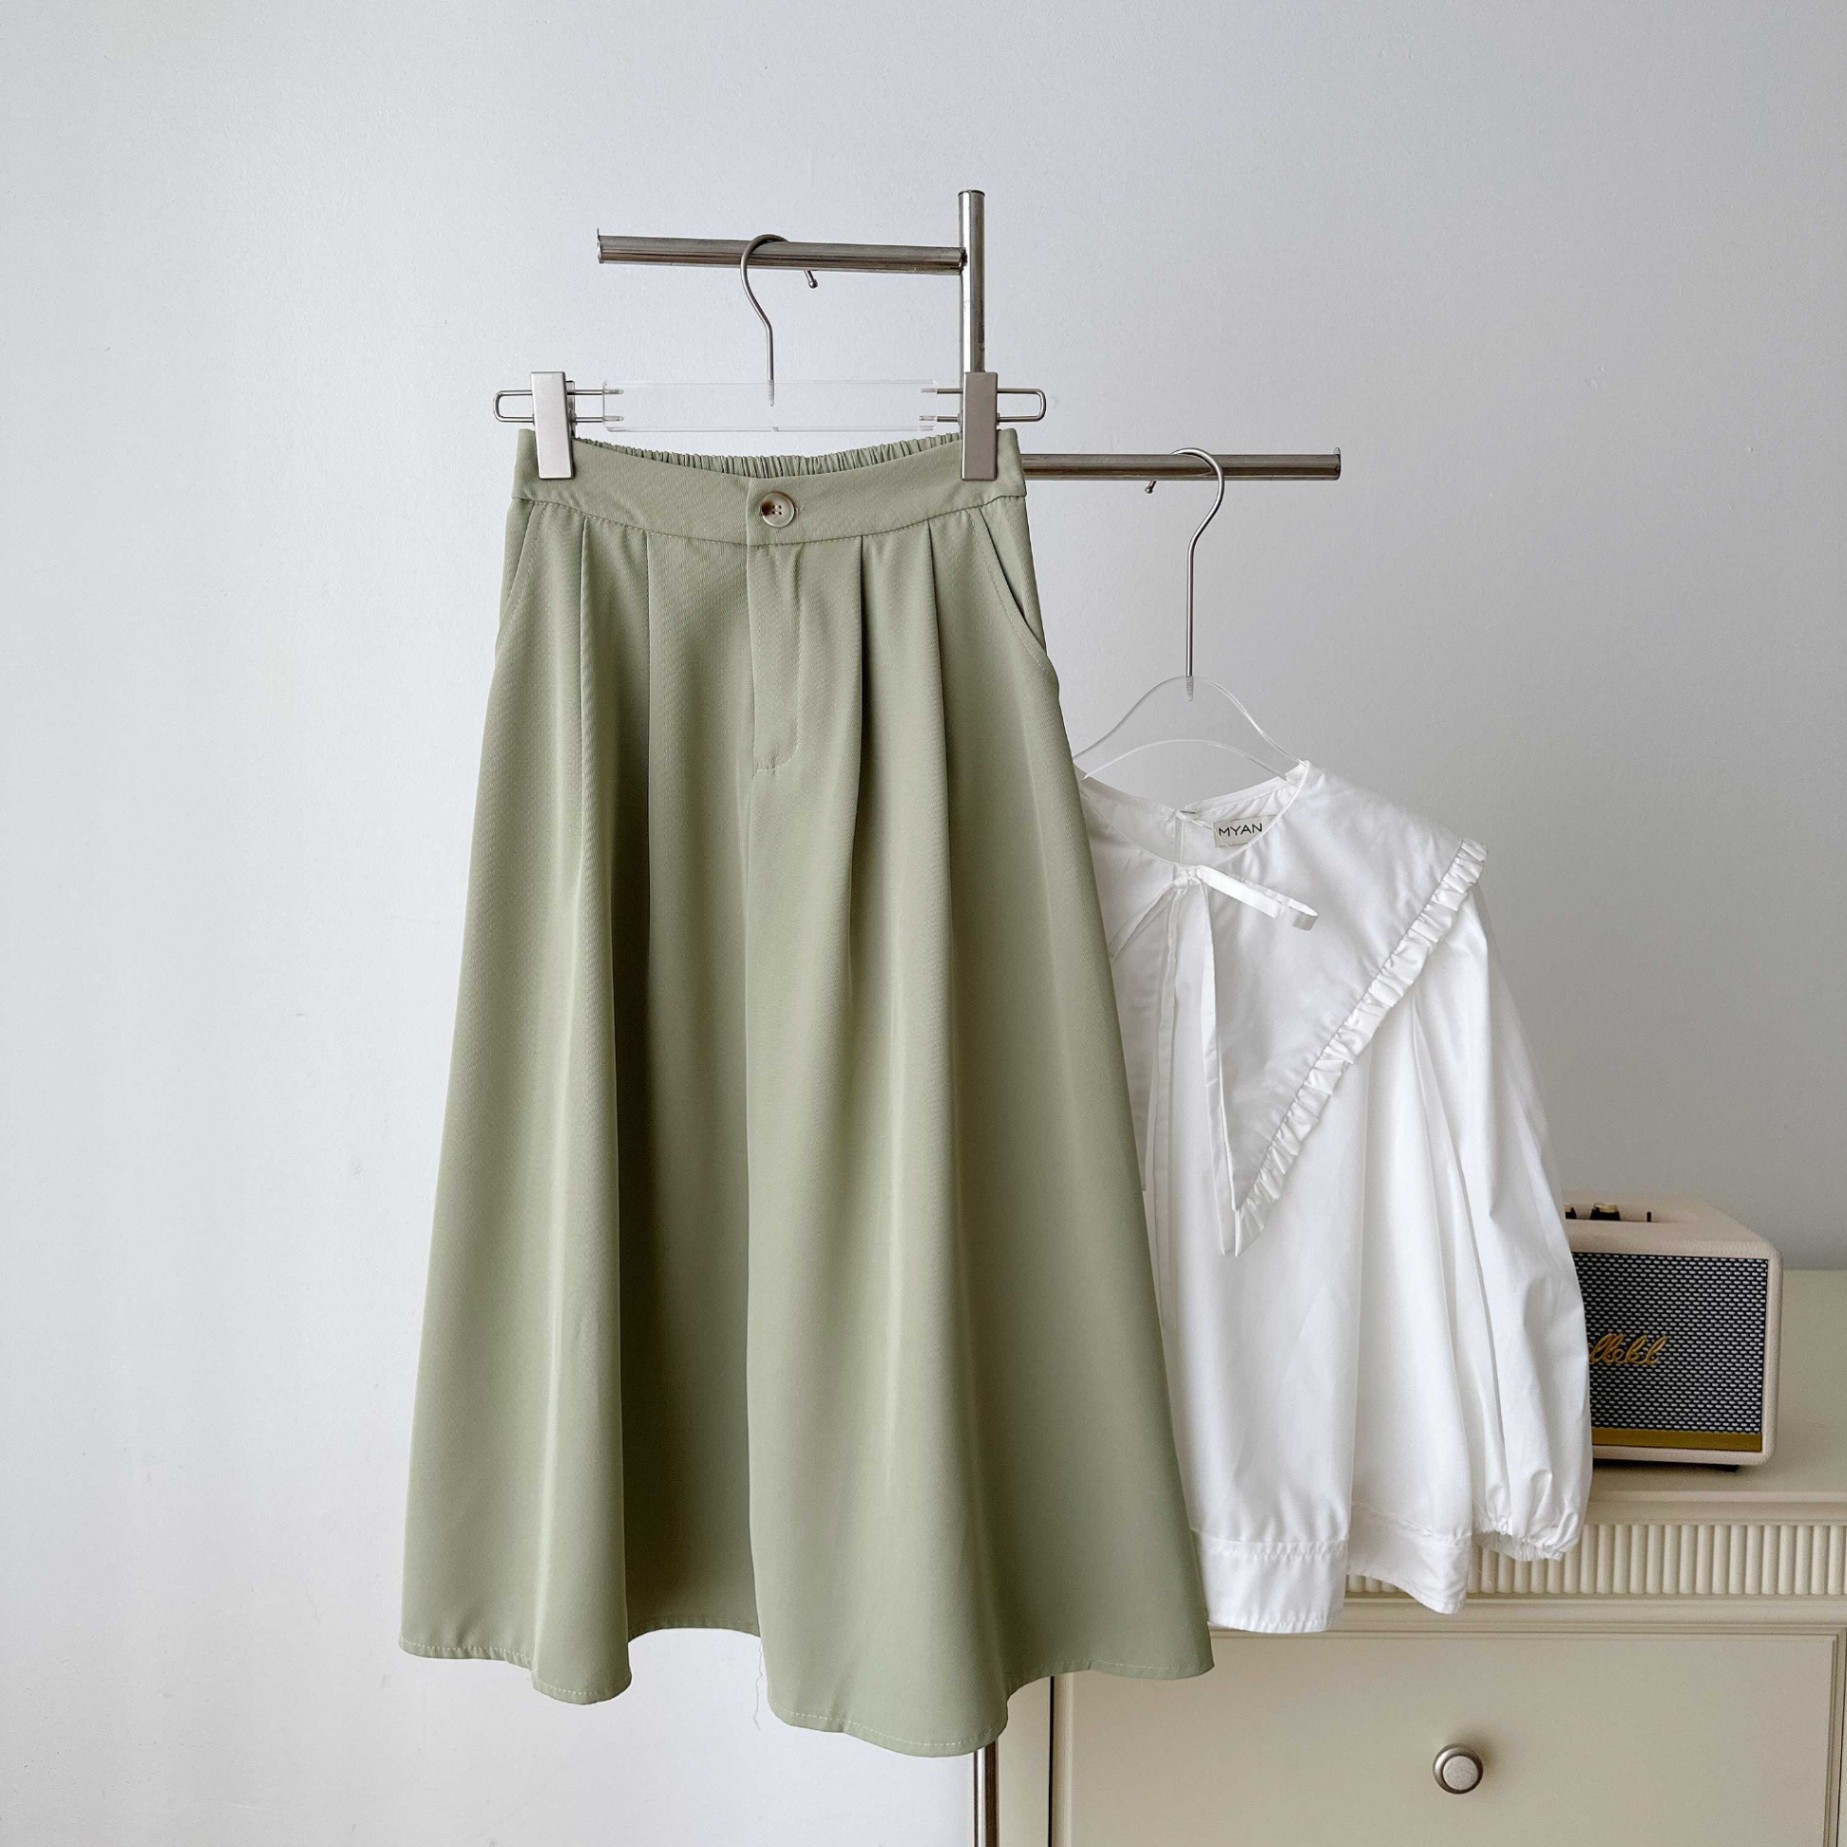 BELY | V761 - Váy đầm 7 mảnh xòe silk lạnh thiết kế choàng vai - Xanh mint,  Hồng pastel - Bely | Thời trang cao cấp Bely